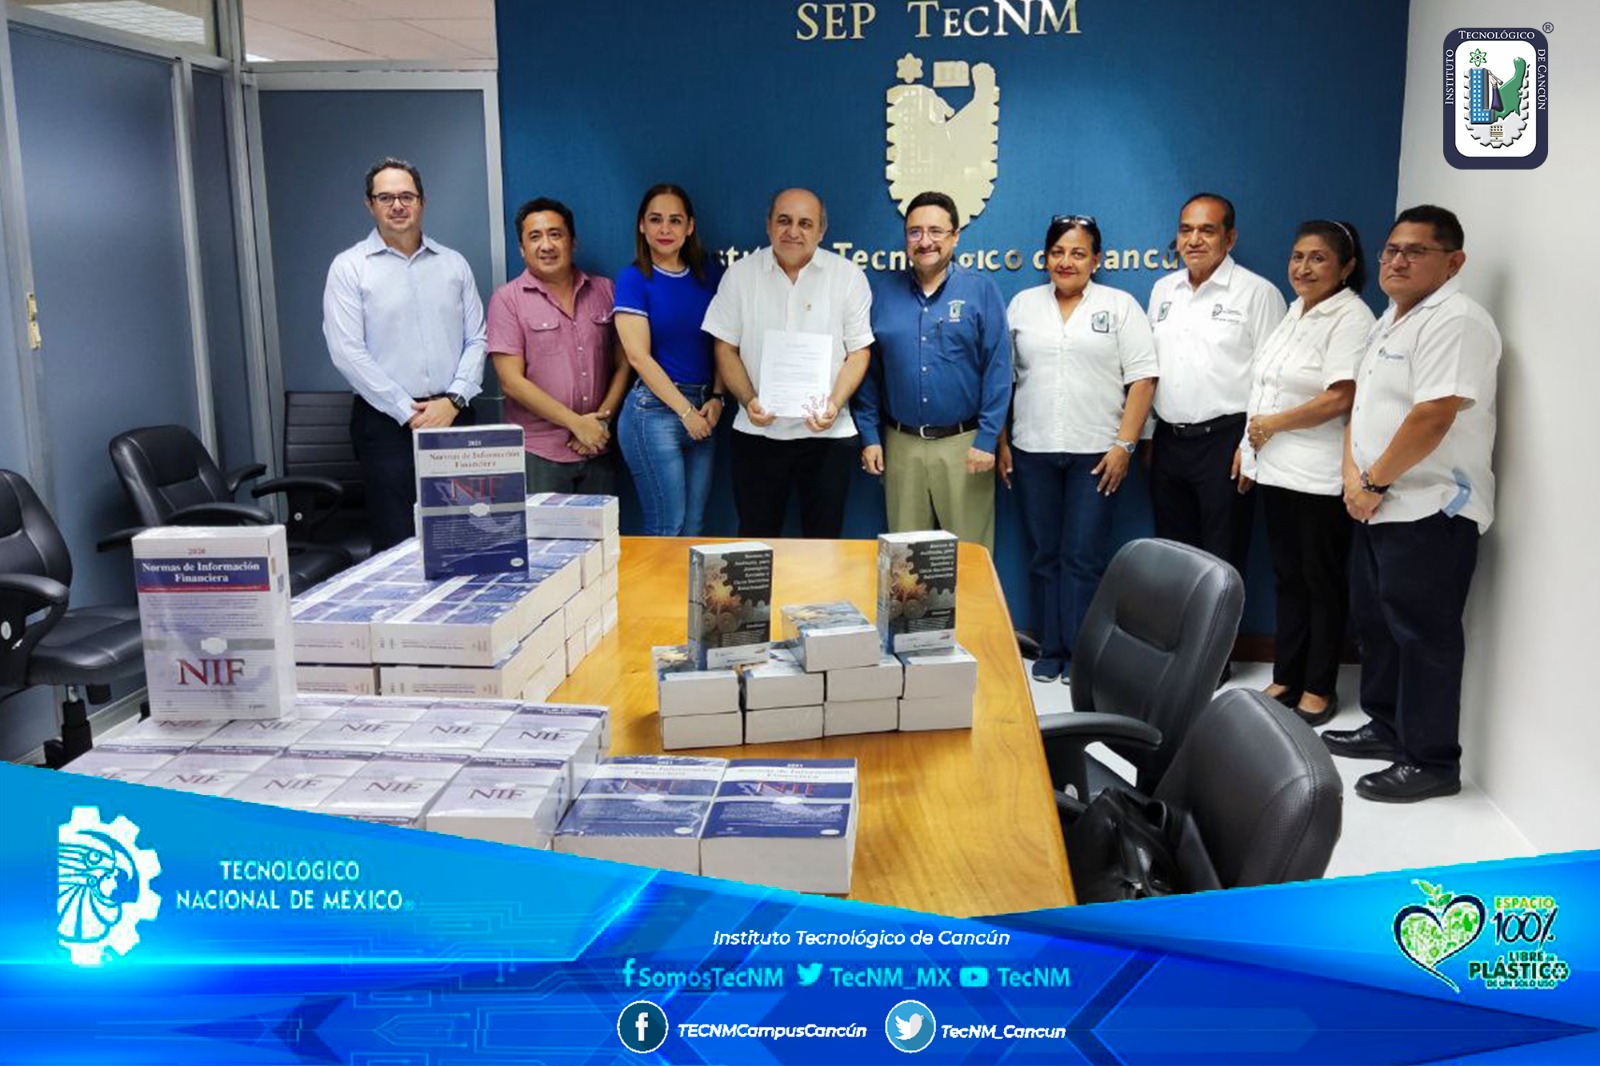 TecNMCampusCancún recibe de parte del Colegio de Contadores Públicos de Cancún y del Instituto Mexicano de Contadores Públicos un donativo de 81 ejemplares de las NIF